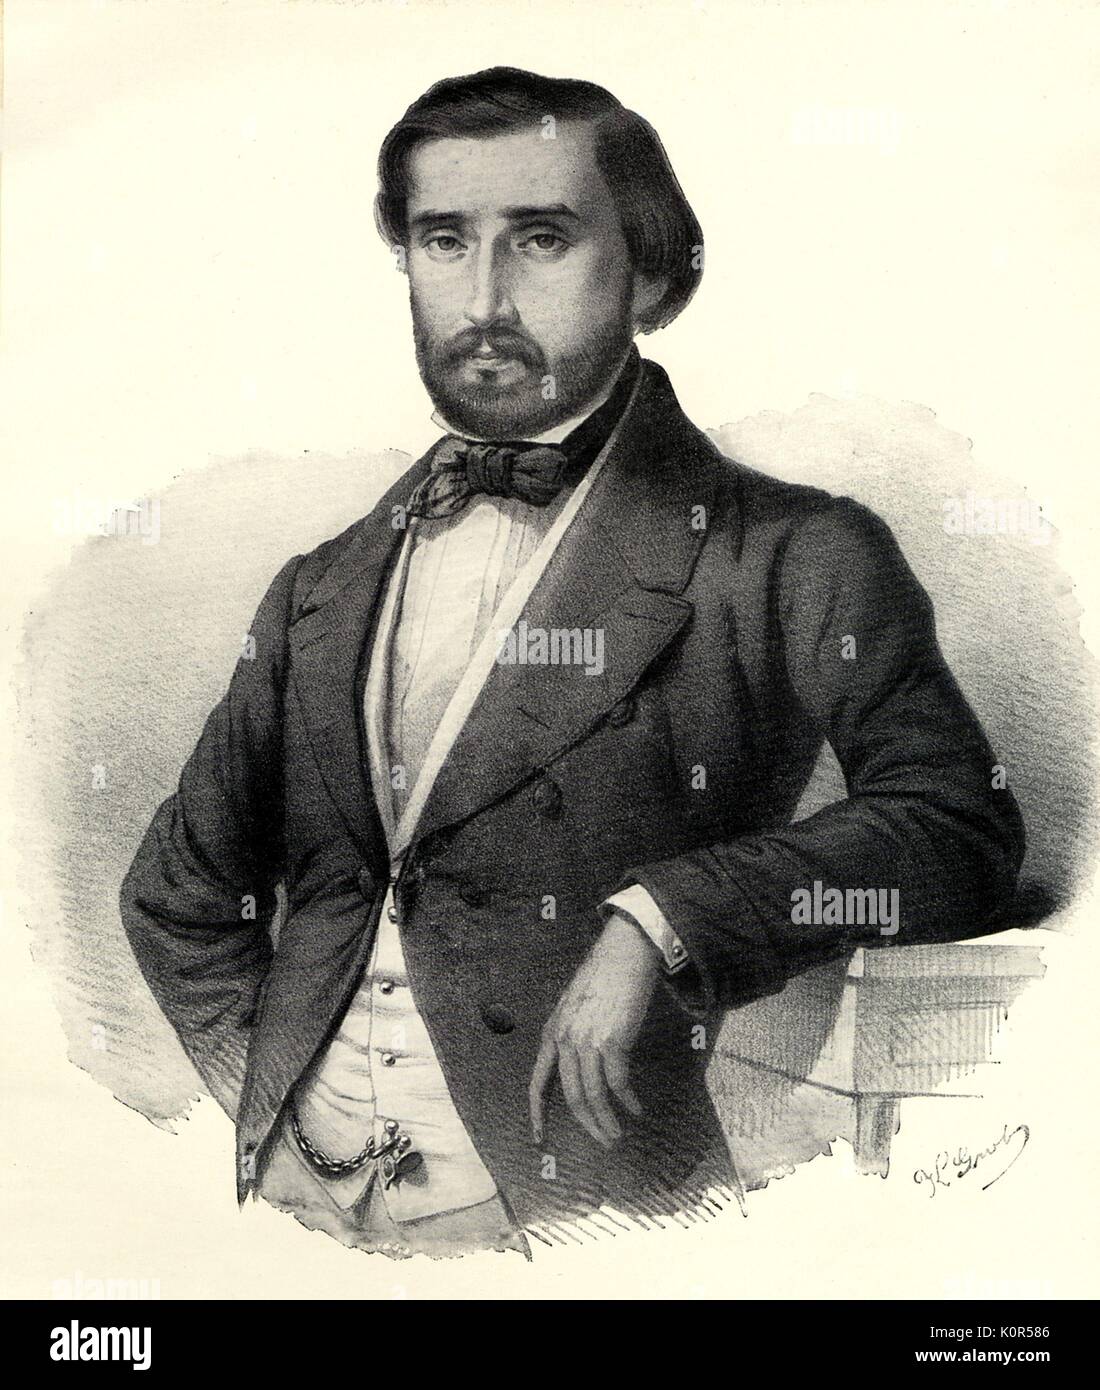 Portrait of Giuseppe Fortunino Francesco Verdi. Italian composer,  9 or 10 October 1813 - 27 January 1901. Stock Photo